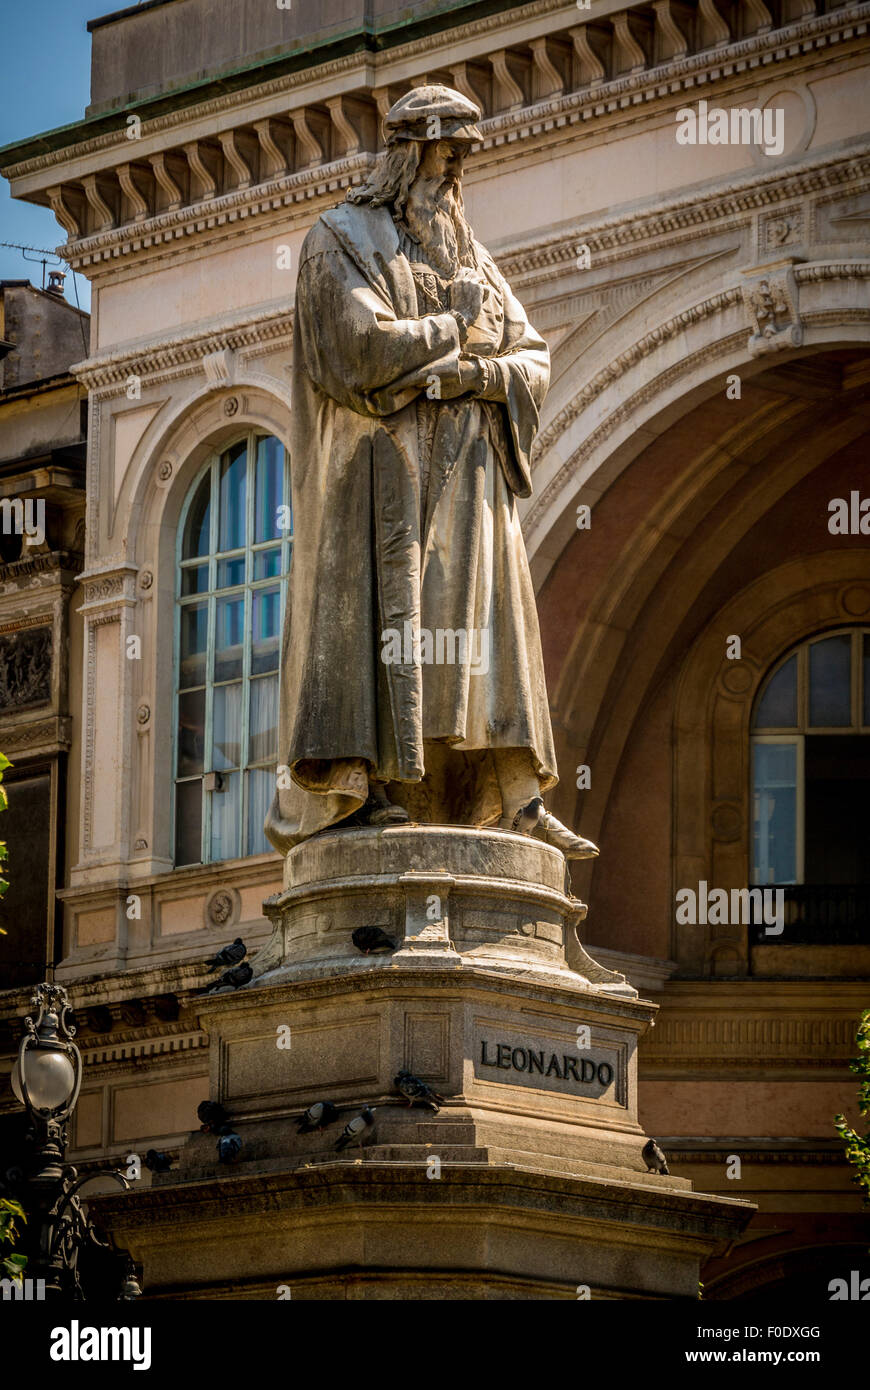 Statue of Leonardo da Vinci in the Piazza della Scala. Stock Photo